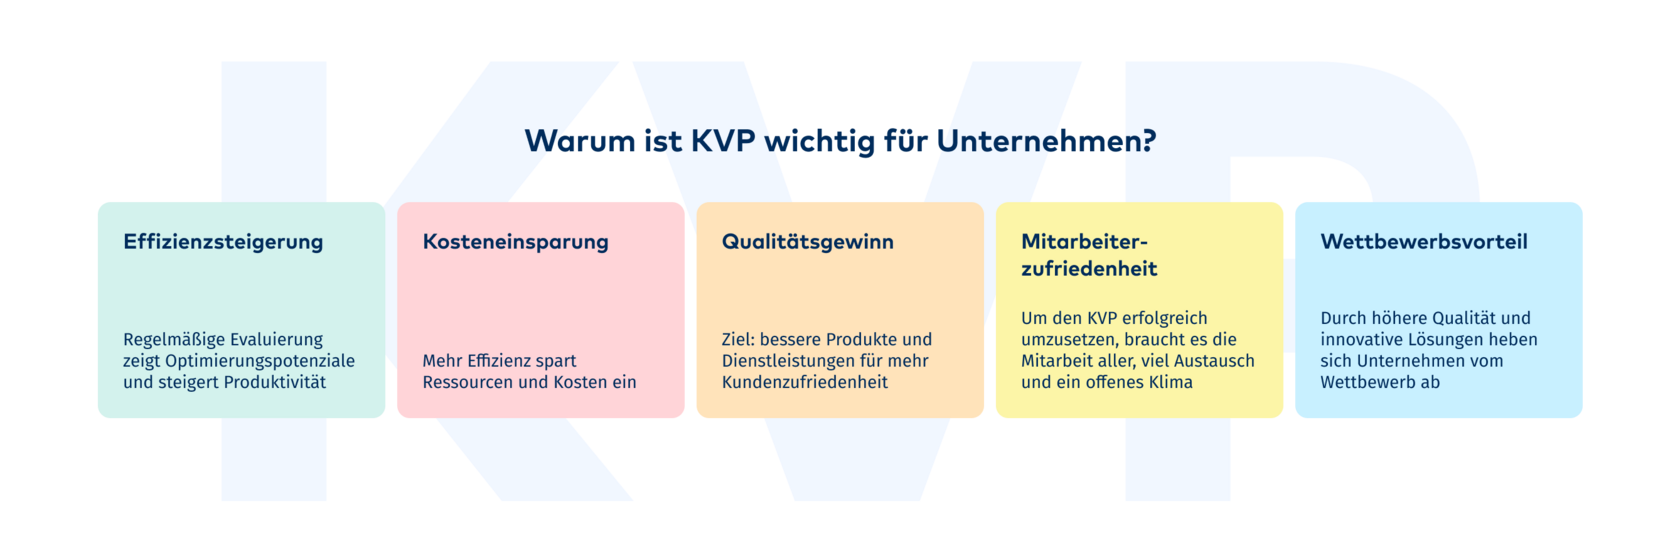 warum ist kvp wichtig für unternehmen - fünf säulen – Effizienzsteigerung, Kosteneinsparung, Qualitätsgewinn, Mitarbeiterzufriedenheit, Wettbewerbsvorteil